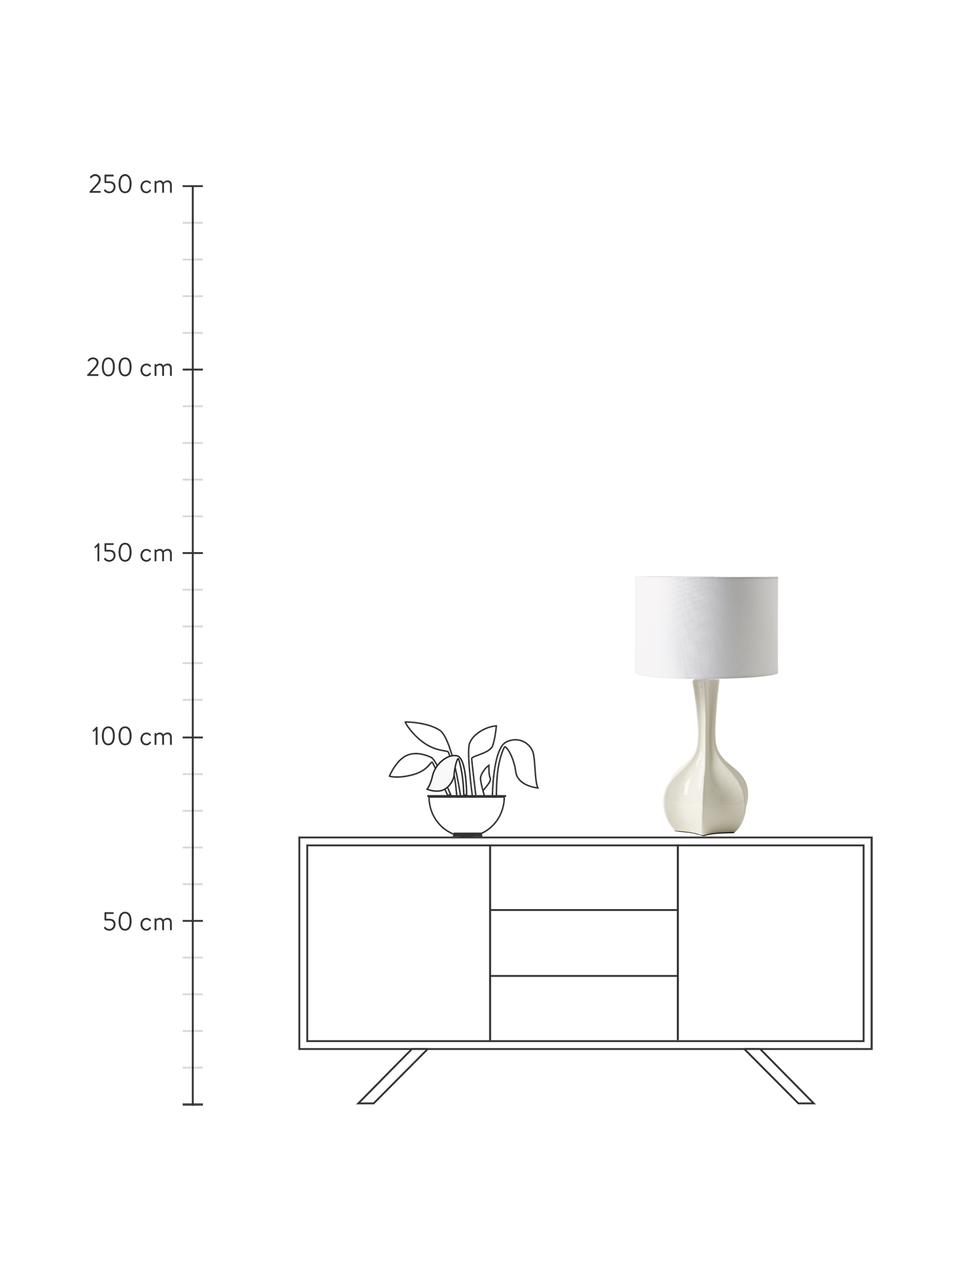 Lampada da tavolo grande con base in ceramica Kash, Paralume: lino, Struttura: metallo rivestito, Bianco, bianco crema, Ø 38 x Alt. 68 cm